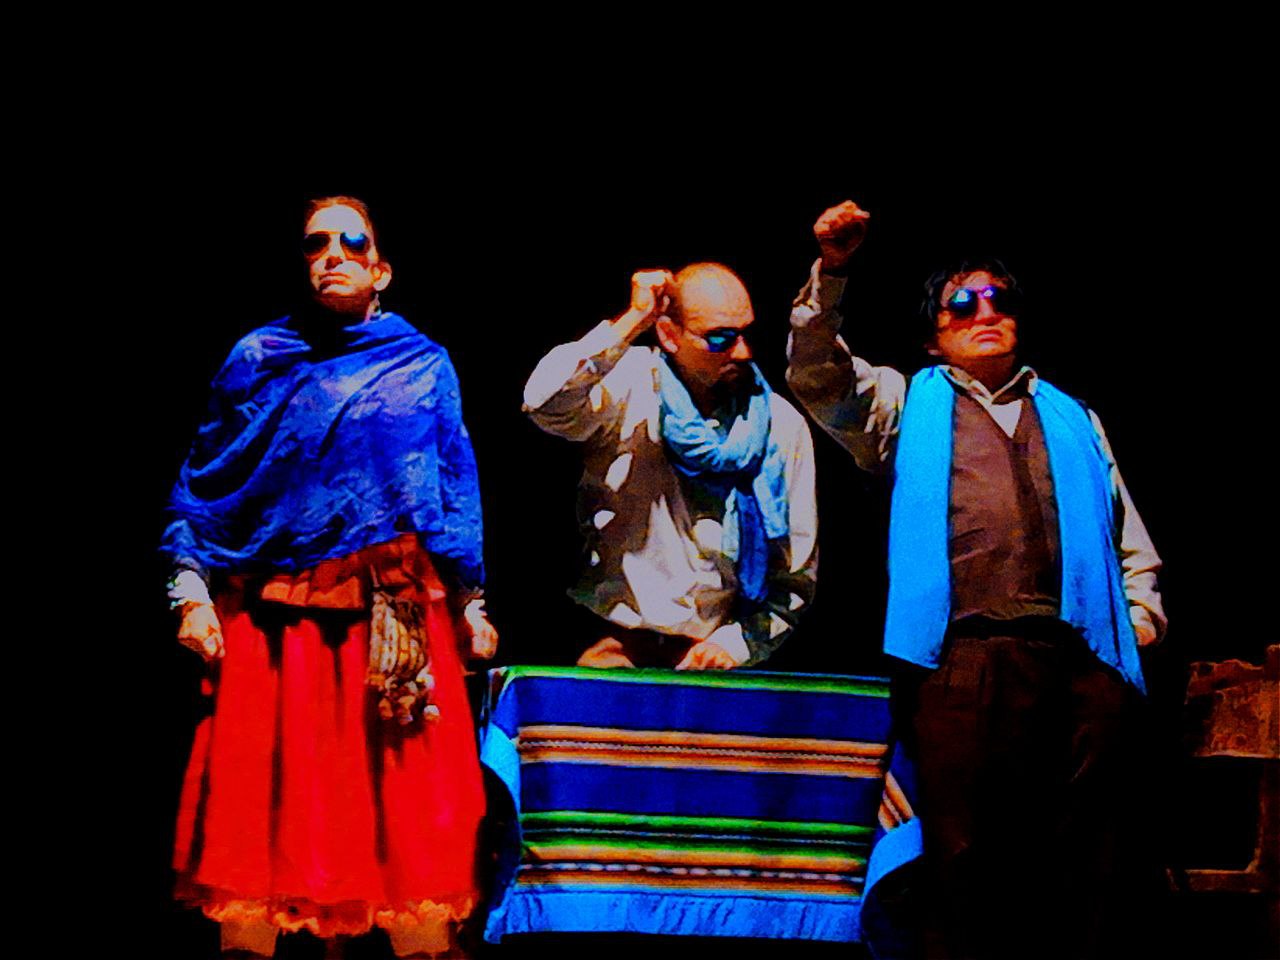 “Que vuelva el Mar”, el grito boliviano en el Festival de Teatro Progresista